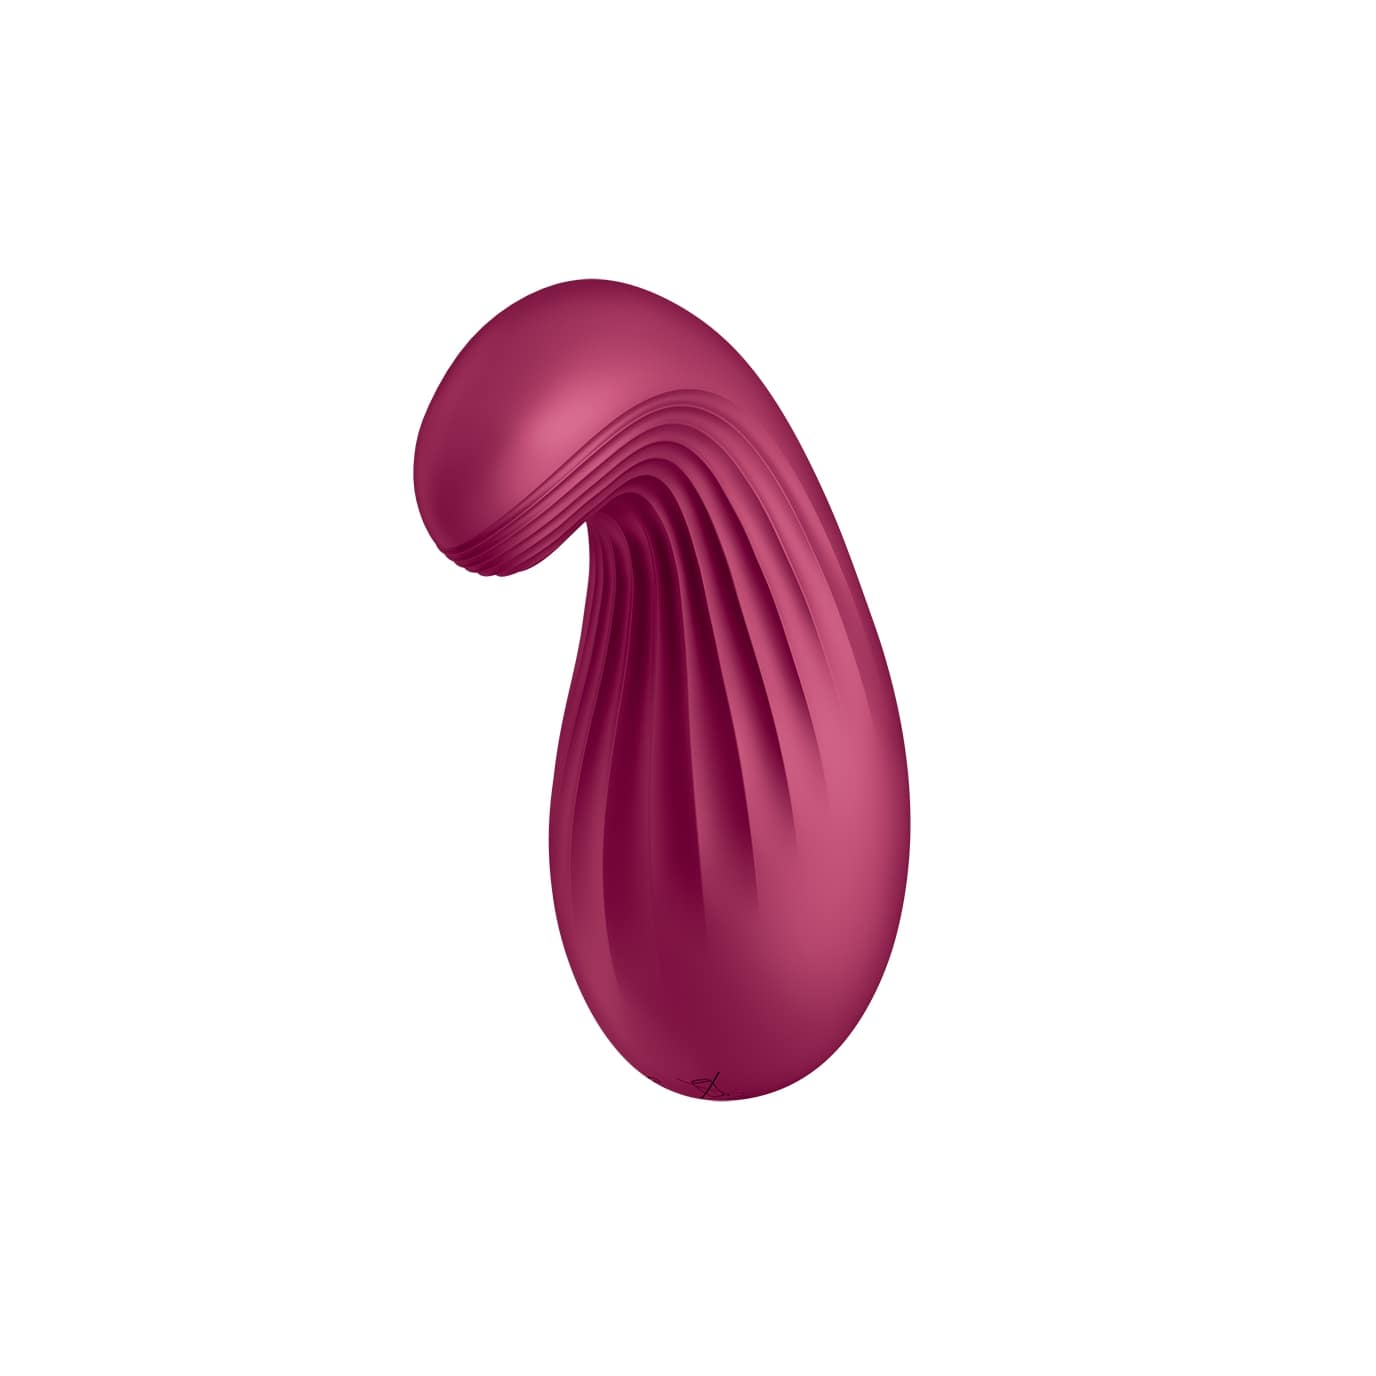 Satisfyer Dipping Delight - akkus csiklóvibrátor (piros) Klitorisz izgatók kép